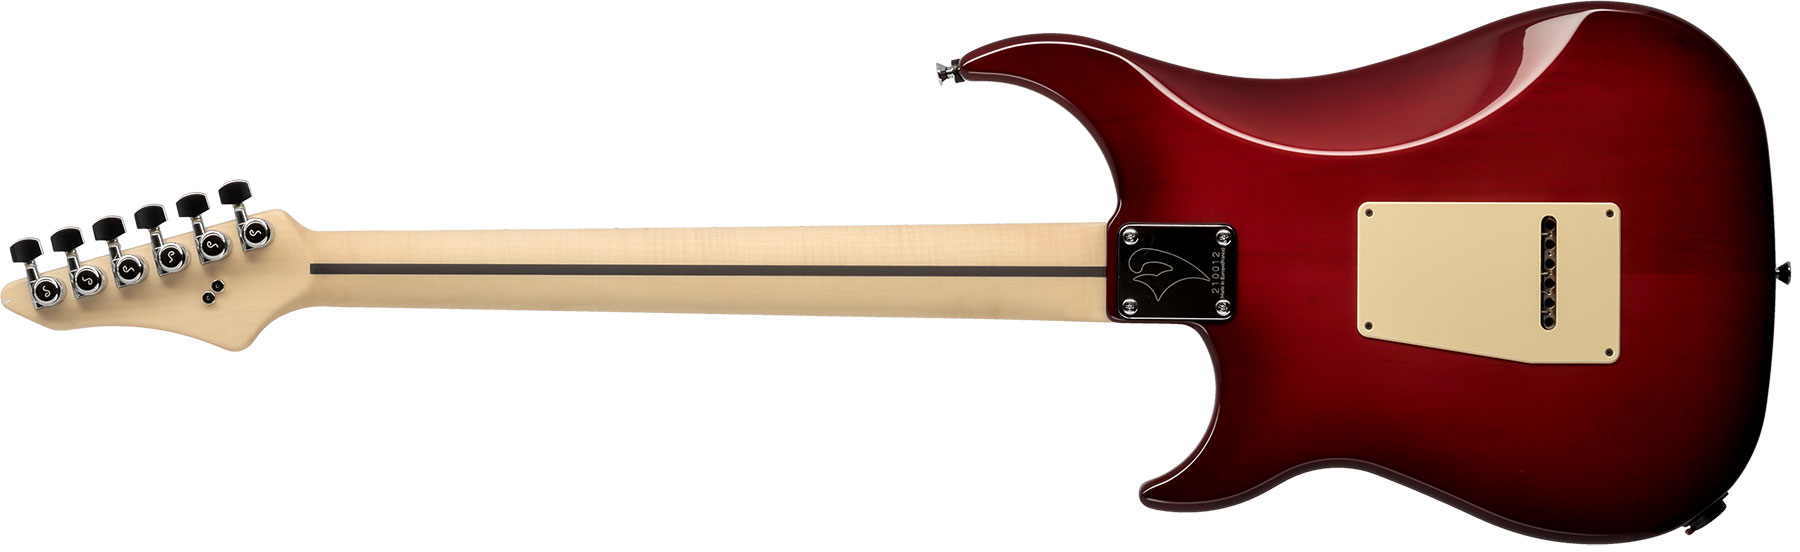 Vigier Excalibur Supraa Hsh Trem Mn - Clear Red - Guitarra eléctrica con forma de str. - Variation 1